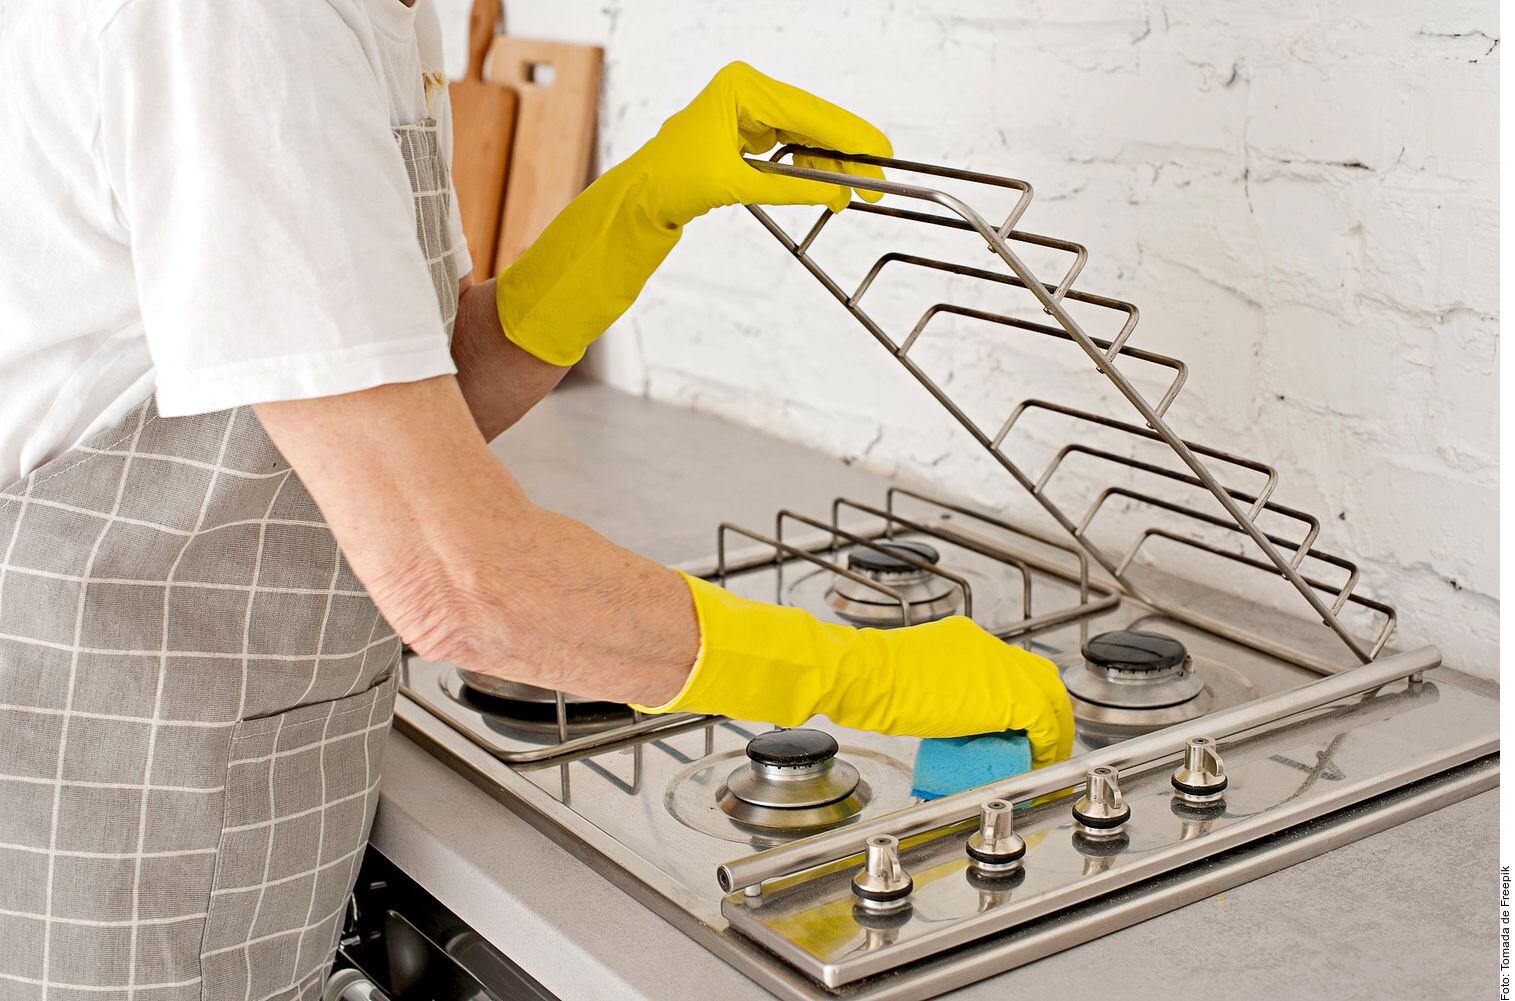 Trucos caseros de limpieza  Elimina estas 5 cosas antes de